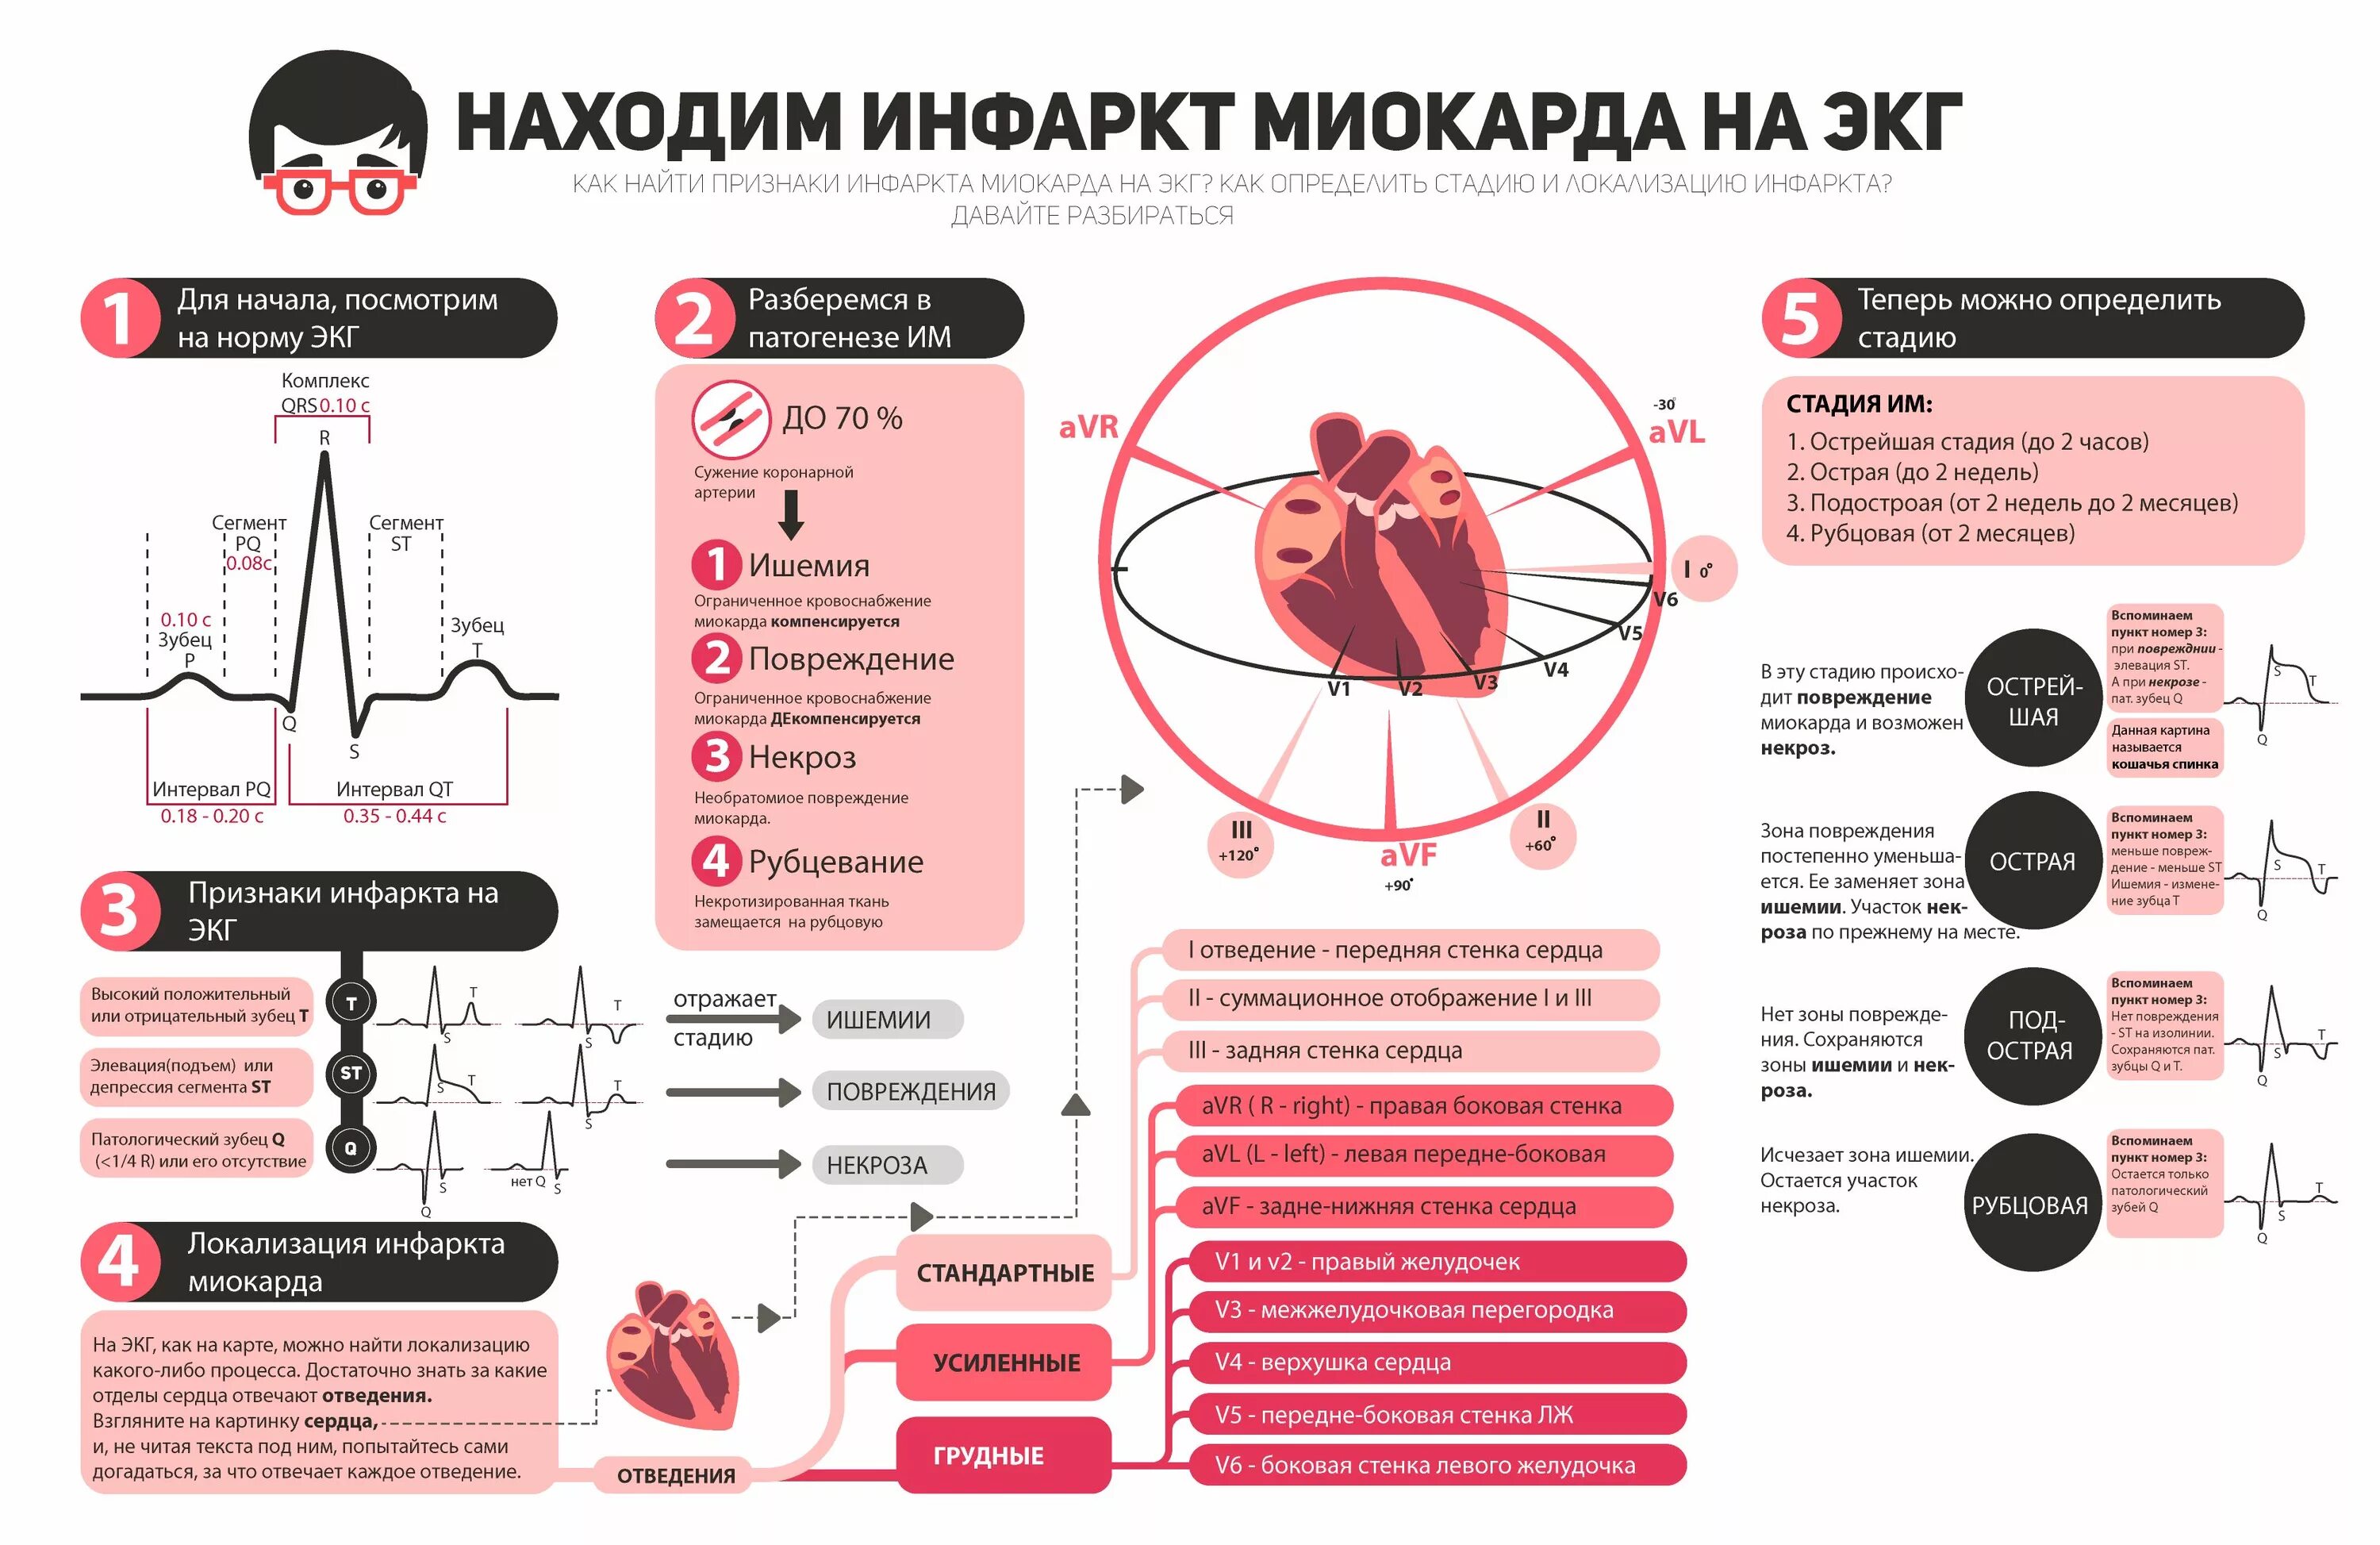 Участок ишемии. Локализация инфаркта по ЭКГ. Локализация инфаркта миокарда по ЭКГ. ЭКГ диагностика инфаркта миокарда по стадиям. Стадия и локализация инфаркта миокарда на ЭКГ.